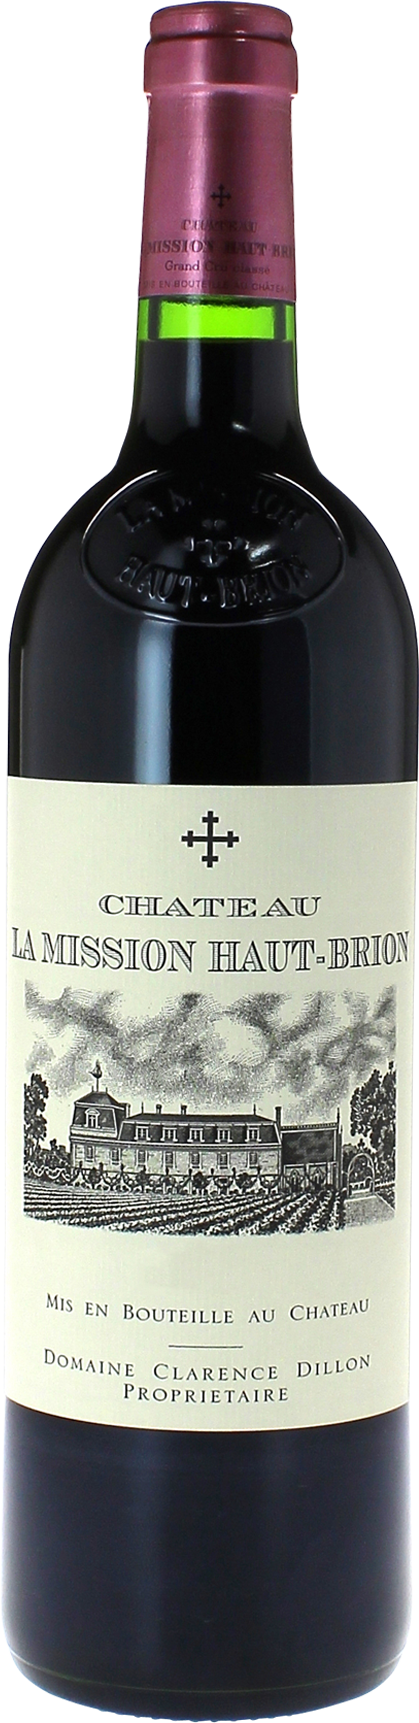 La Mission Haut-Brion 2002